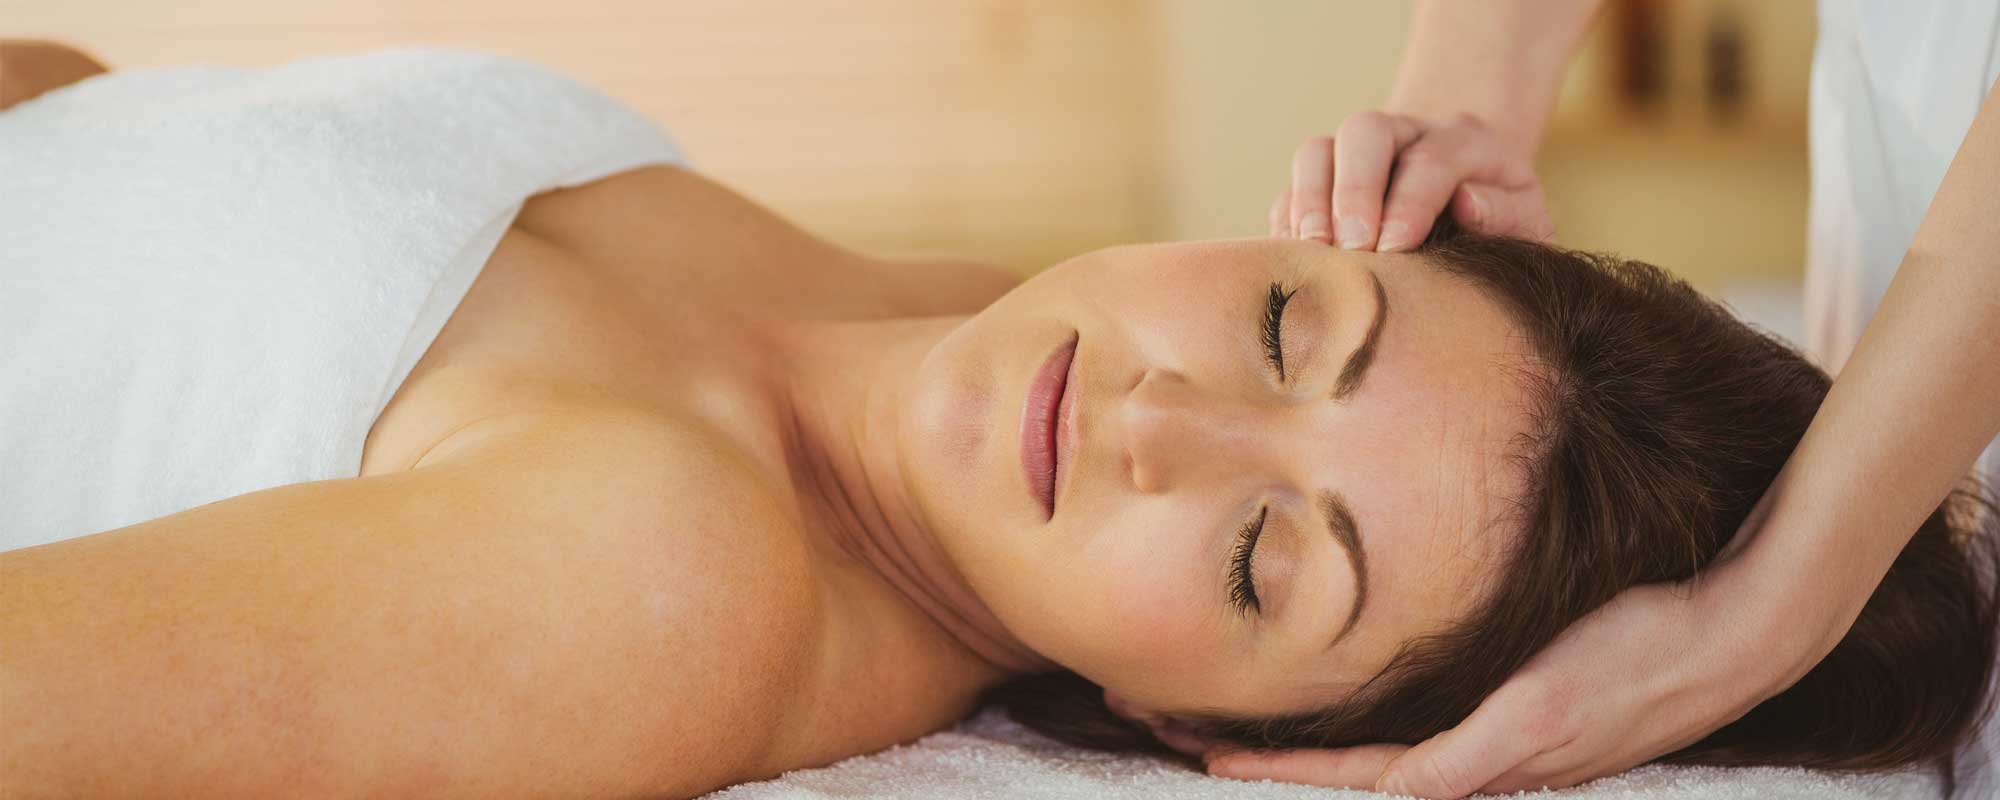 Você conhece os benefícios das <span>Massagens Relaxantes?</span>